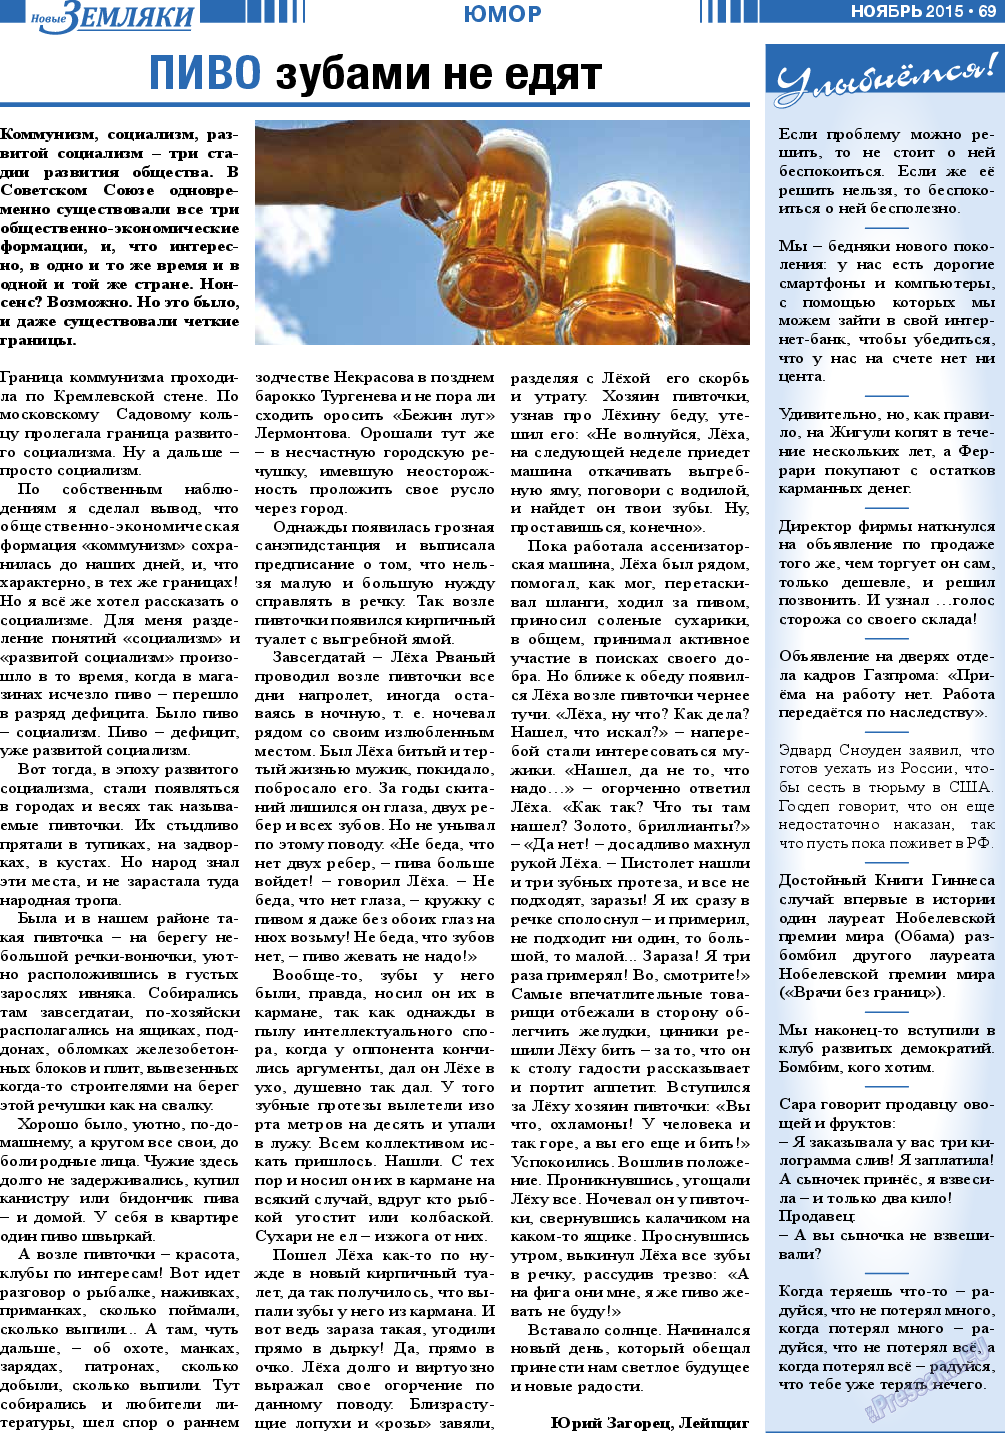 Новые Земляки (газета). 2015 год, номер 11, стр. 69